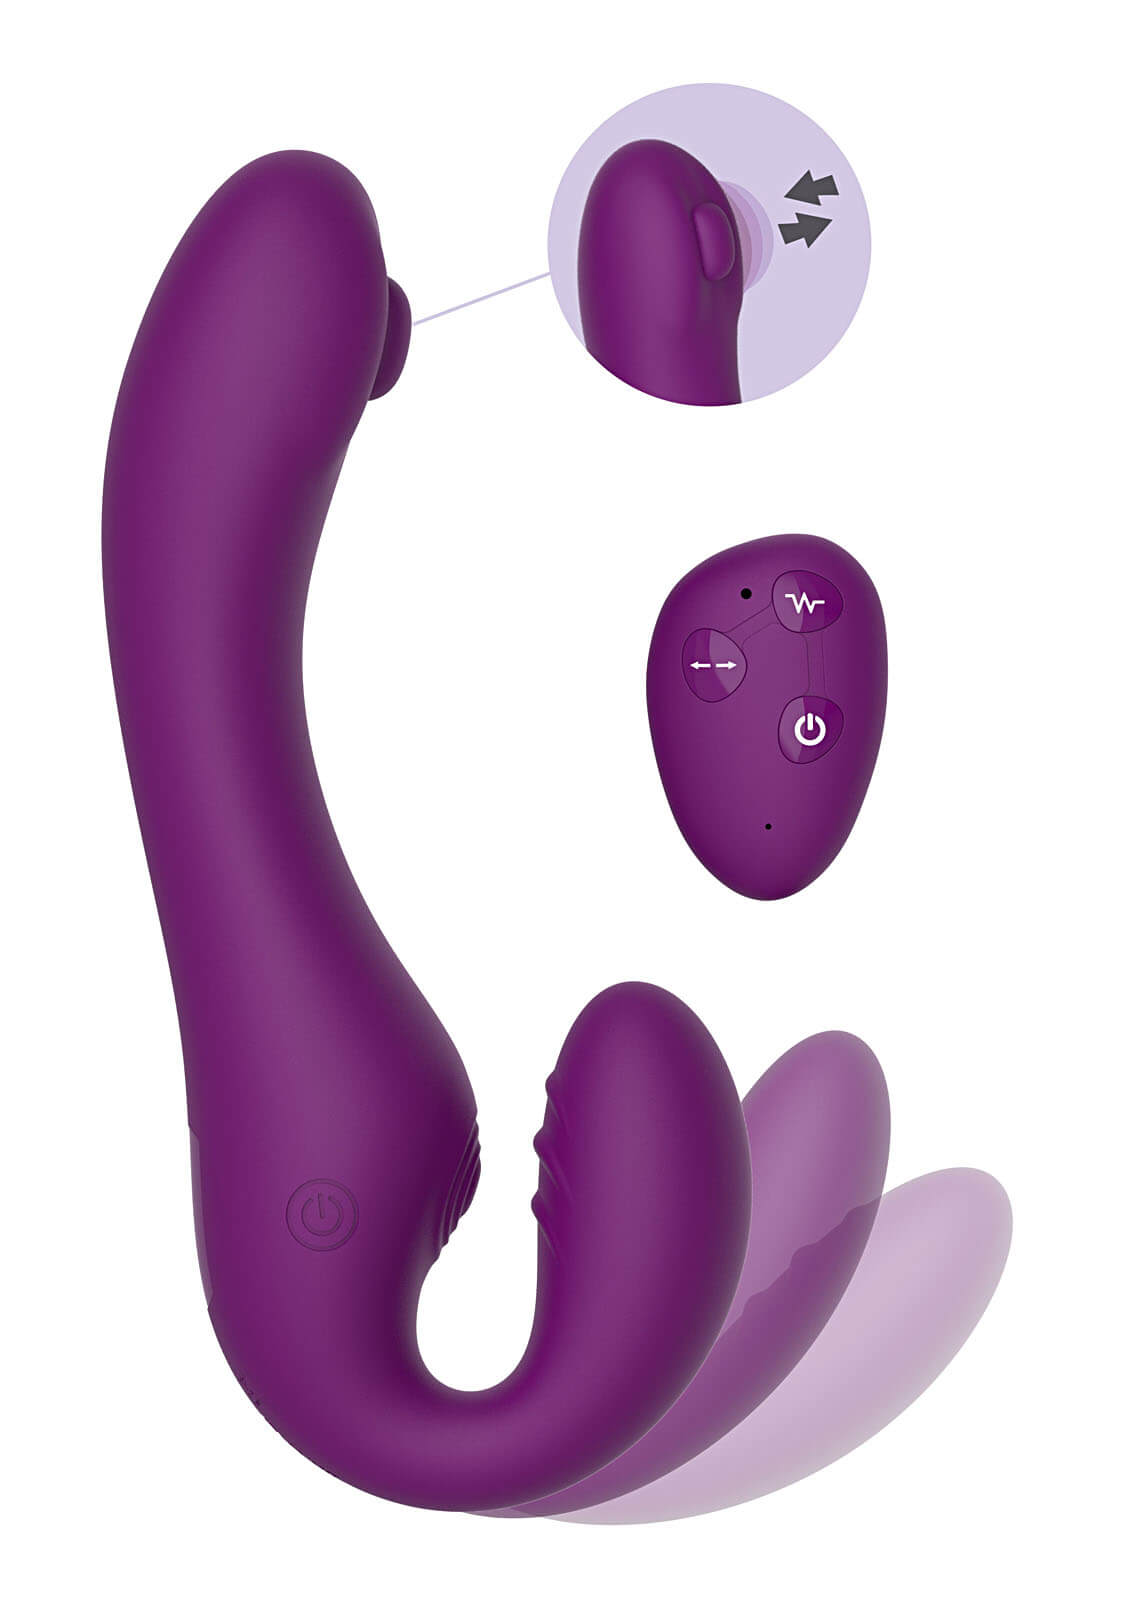 XoCoon Strapless Strapon Pulse Vibe (Purple), vibrátor pro dominantní ženy